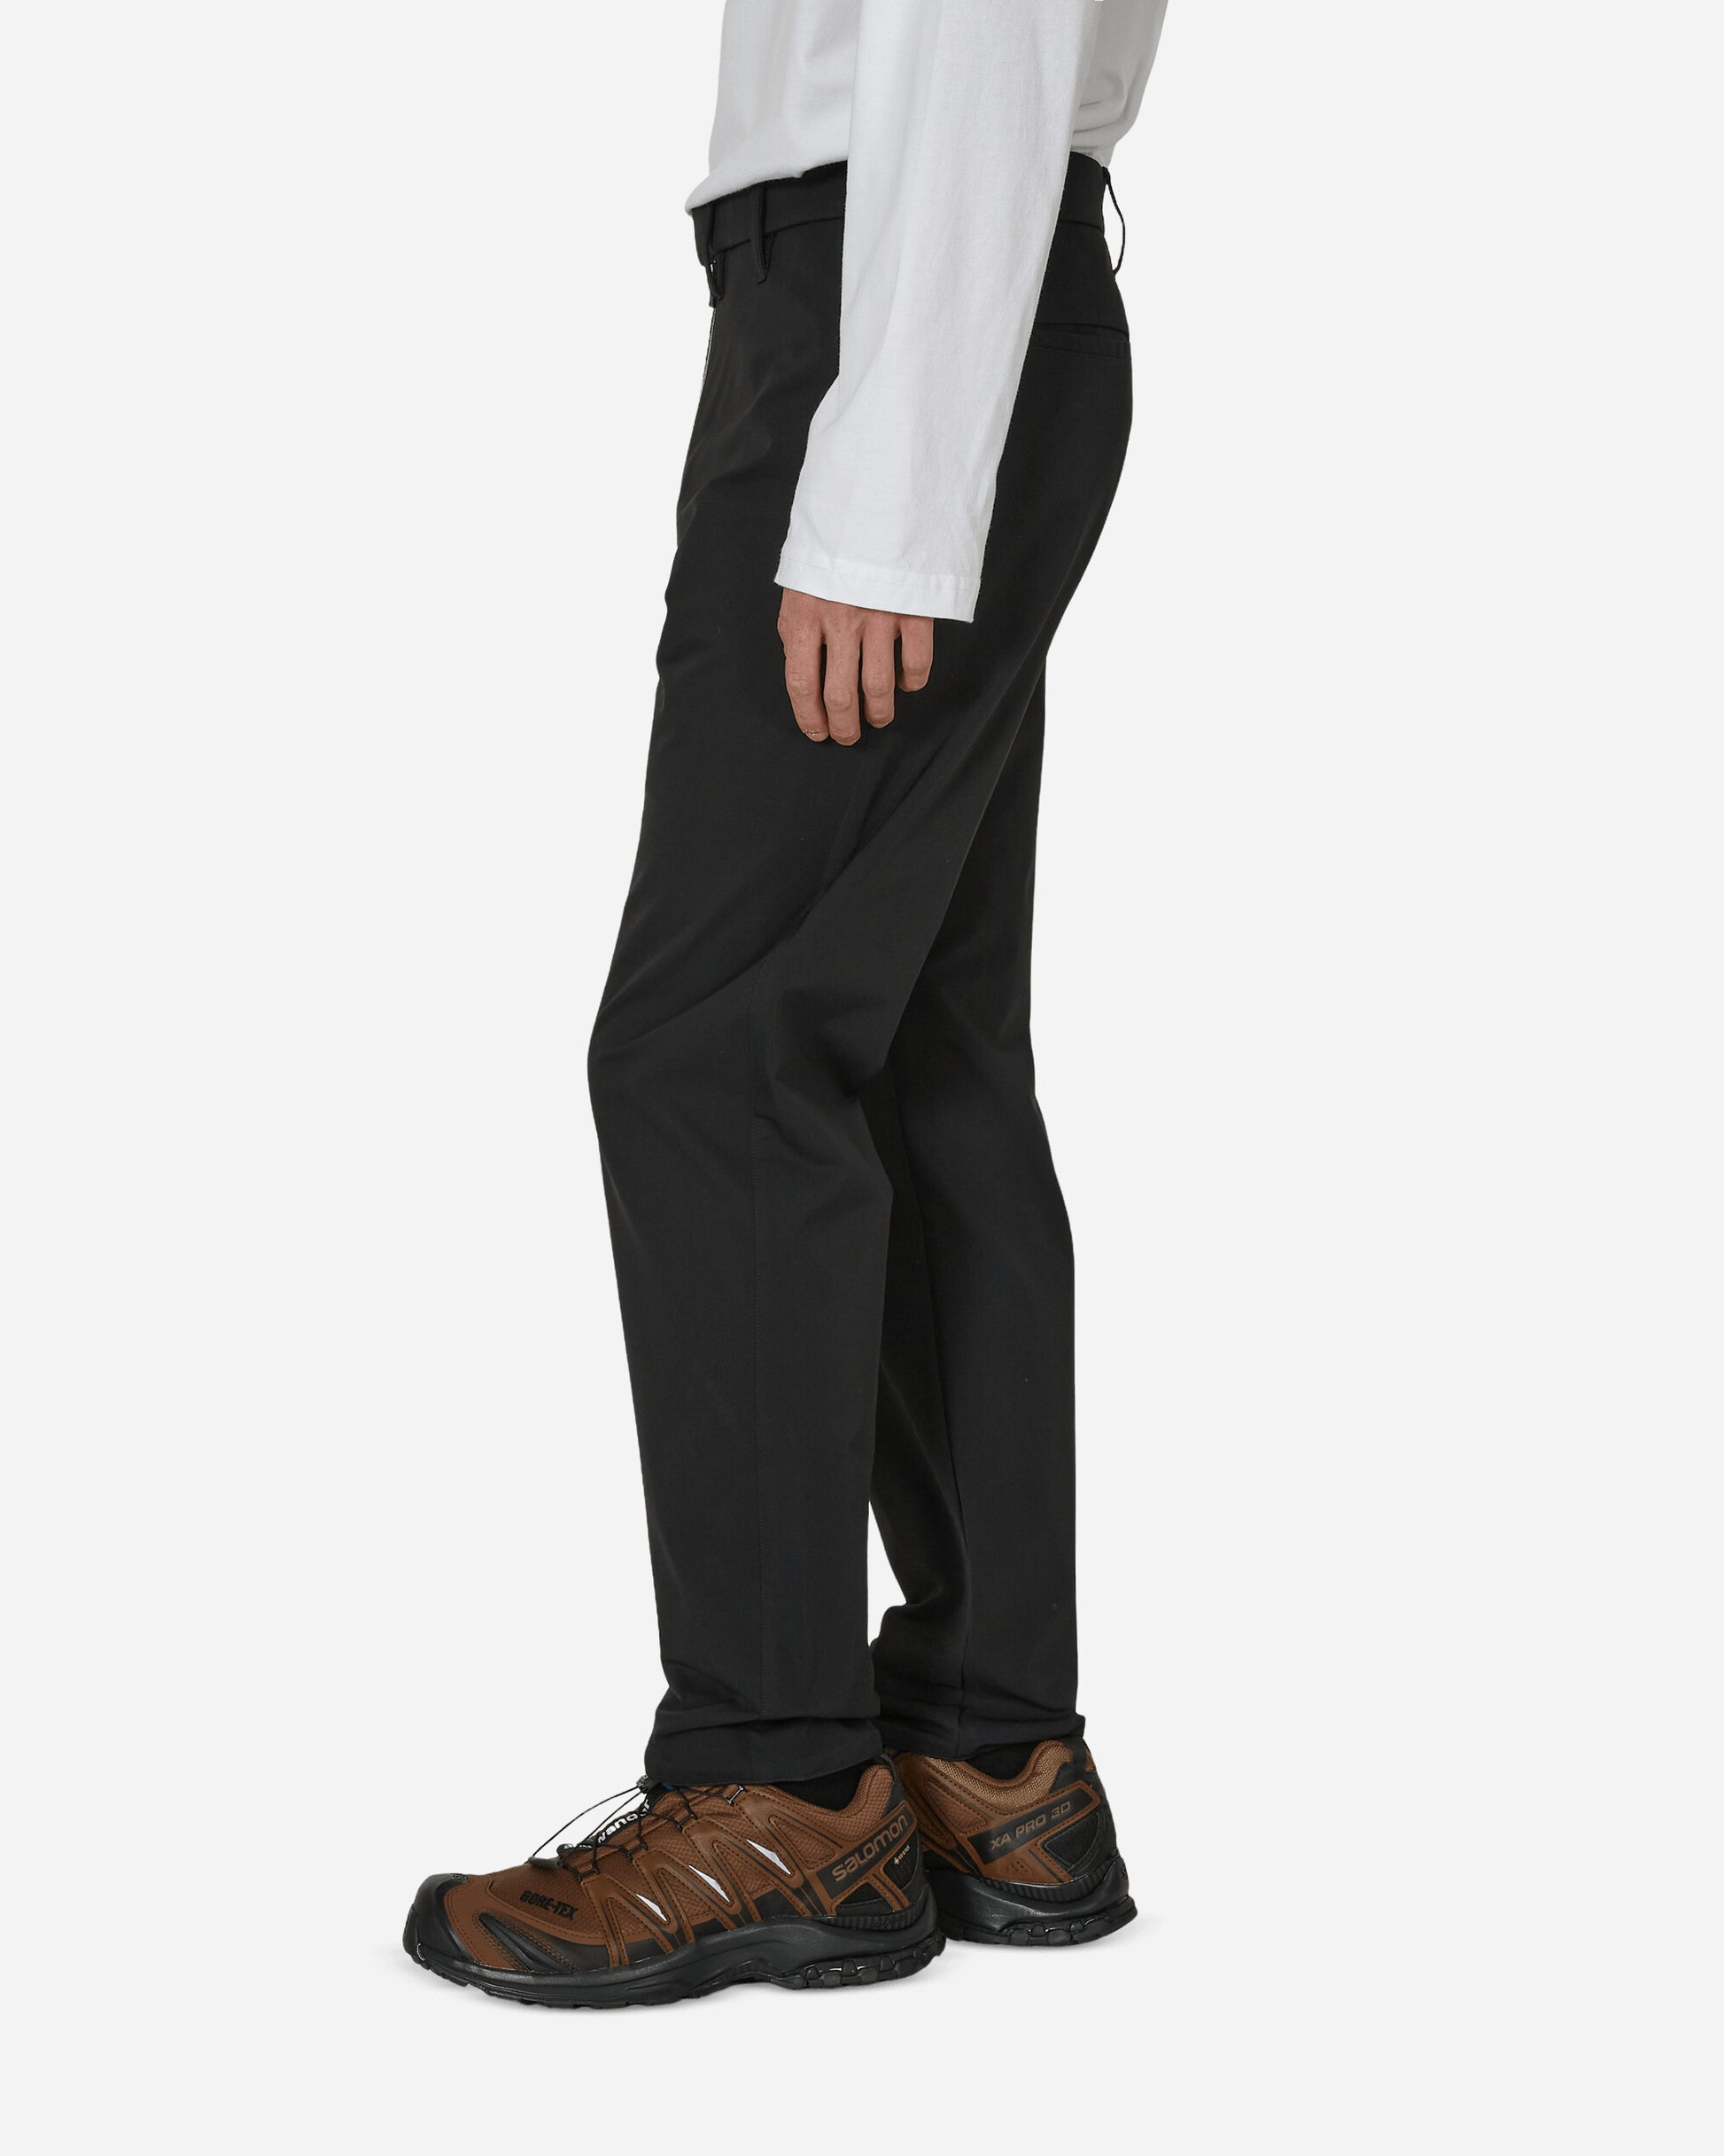 Acronym Schoeller Dryskin Pant Black Pants Trousers P47-DS 1